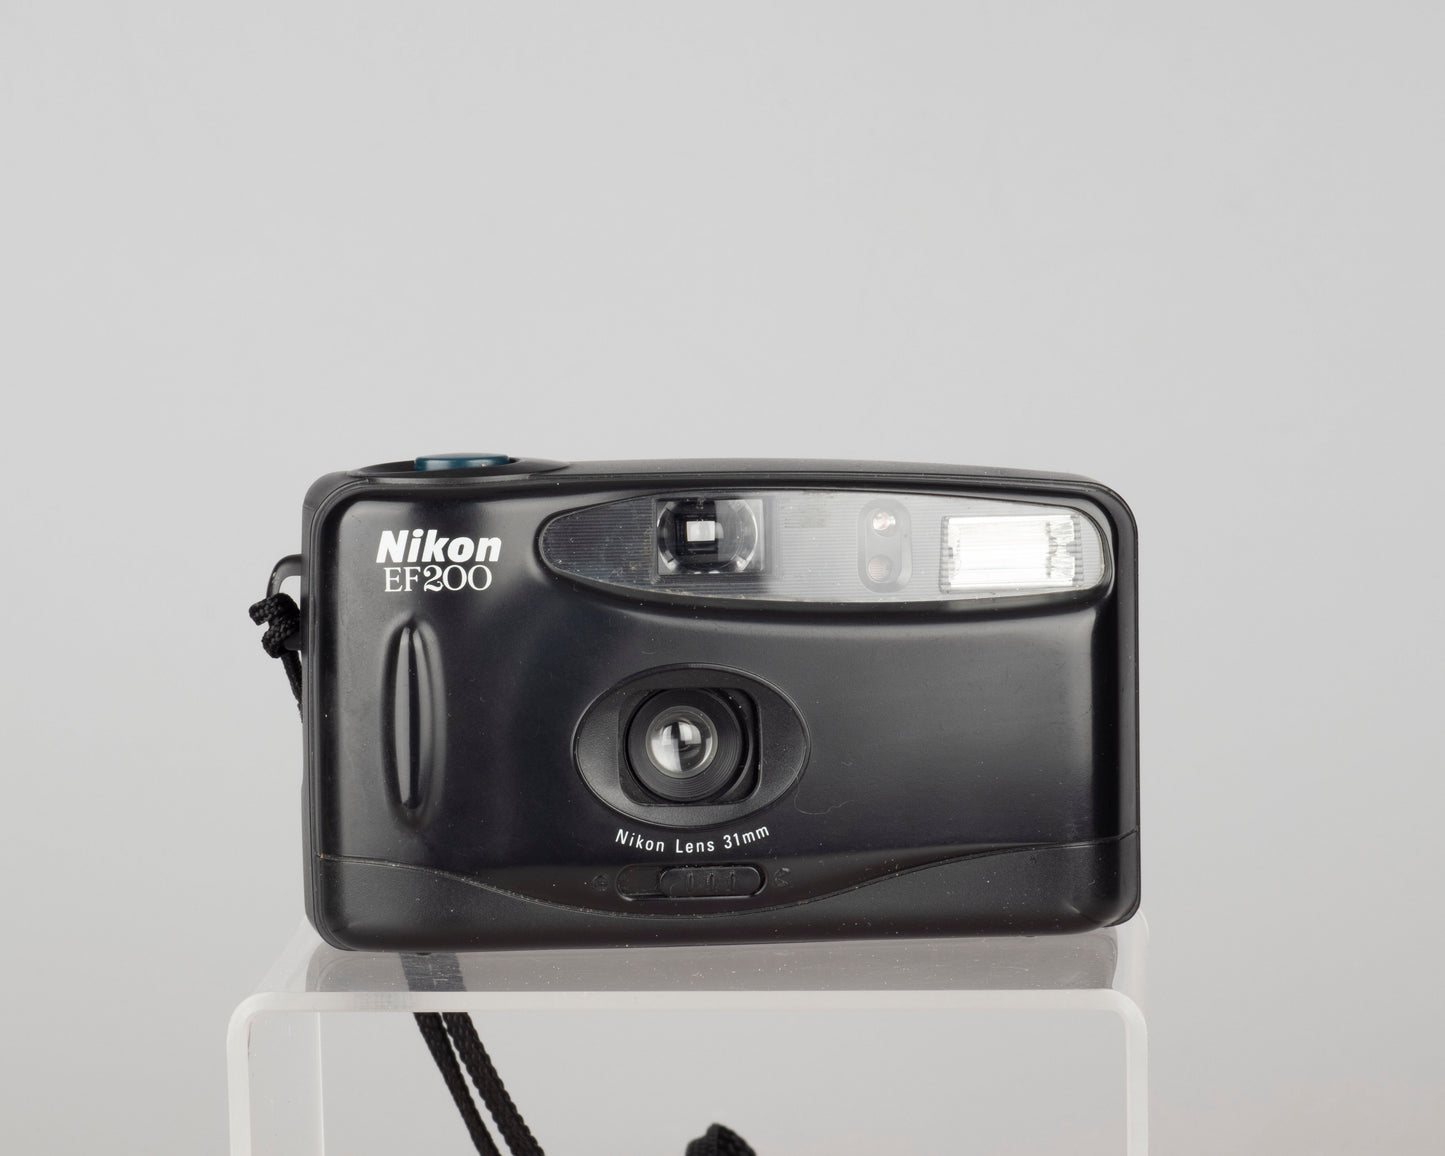 Nikon EF200 35mm camera (serial 7105772)